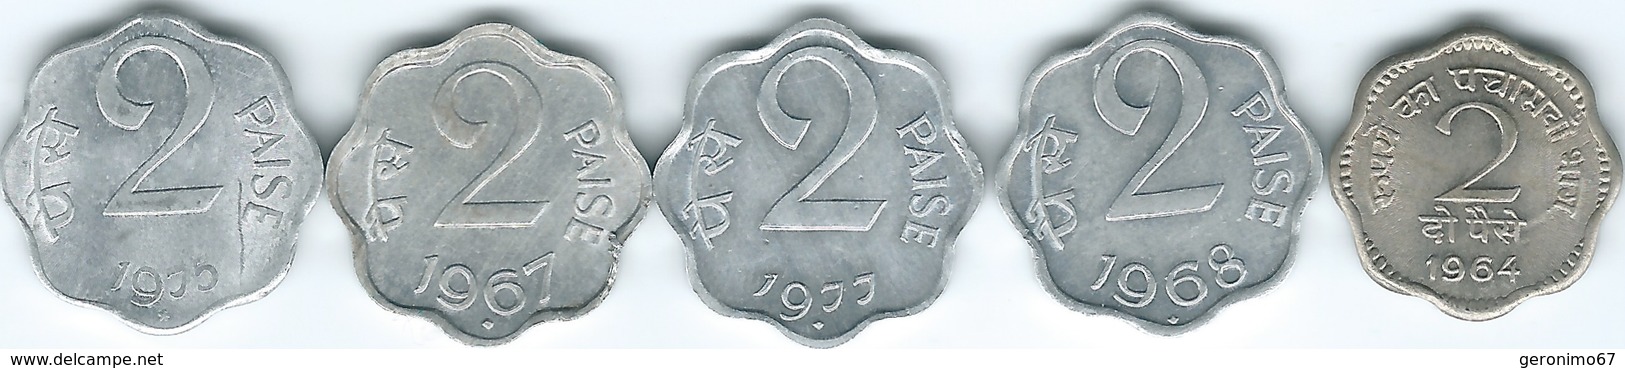 India - 2 Paise - 1964 (KM12); 1967 - (KM13.1) & 1968  - Bombay (KM13.5) 1975 - Hyderabad (KM13.6) - 1977 - (KM13.4) - India